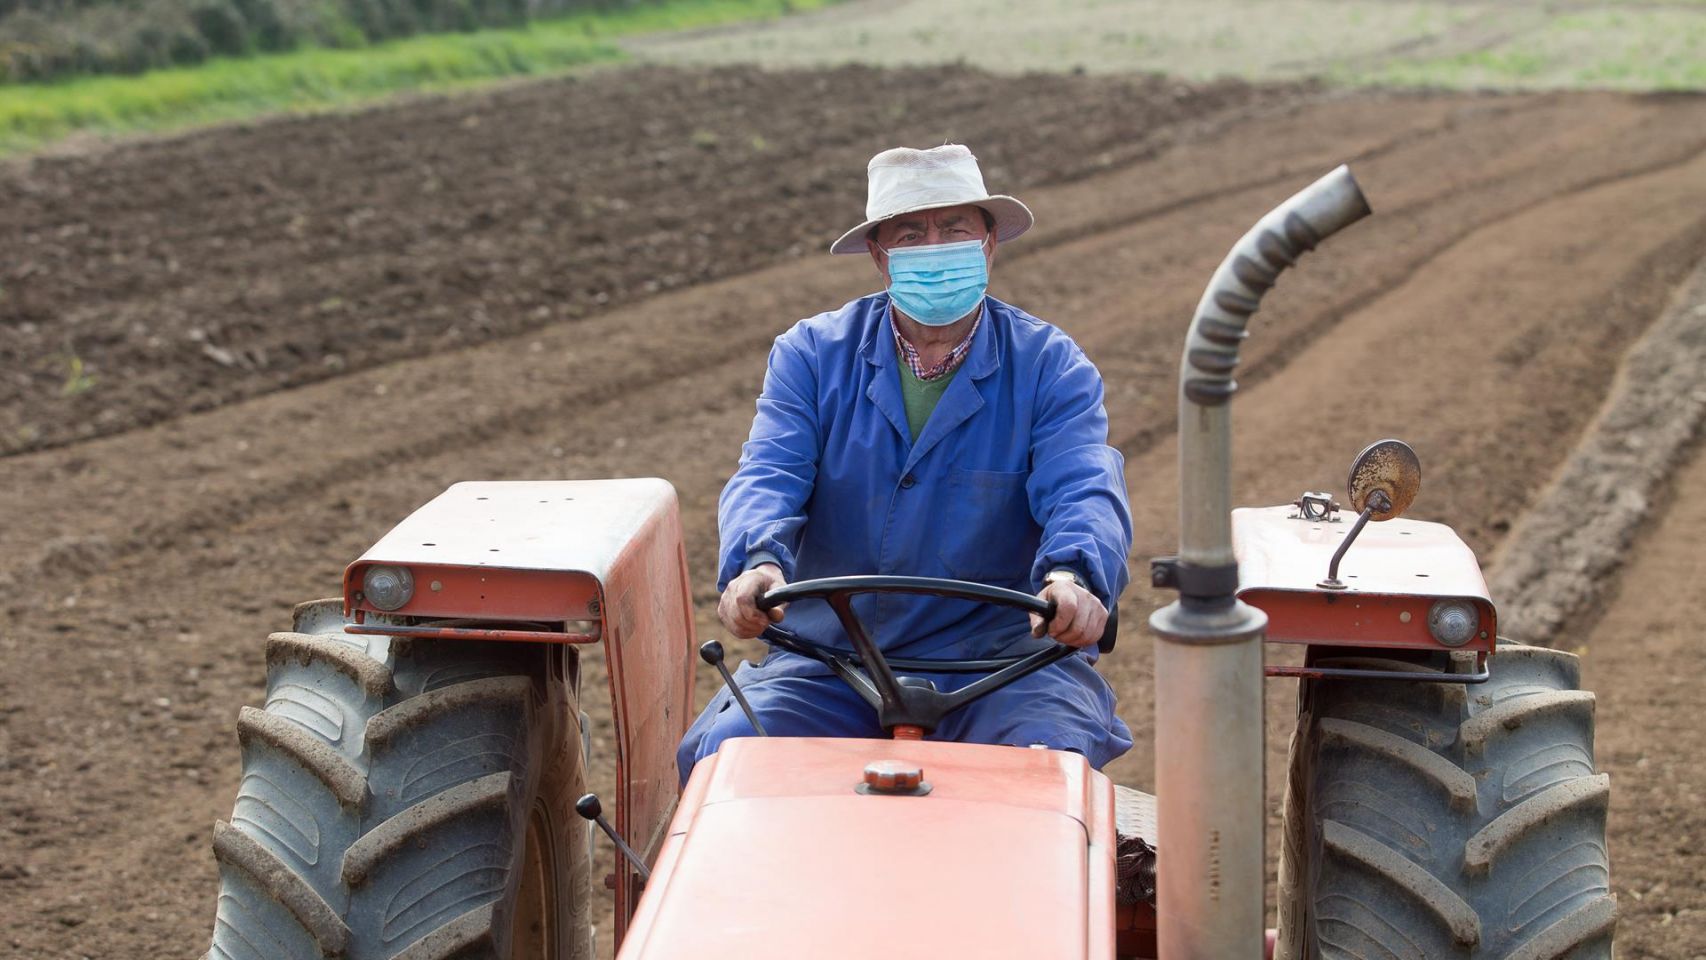 Manuel Rodríguez ara sus fincas con el tractor y mascarilla para plantar patatas en Lugo.